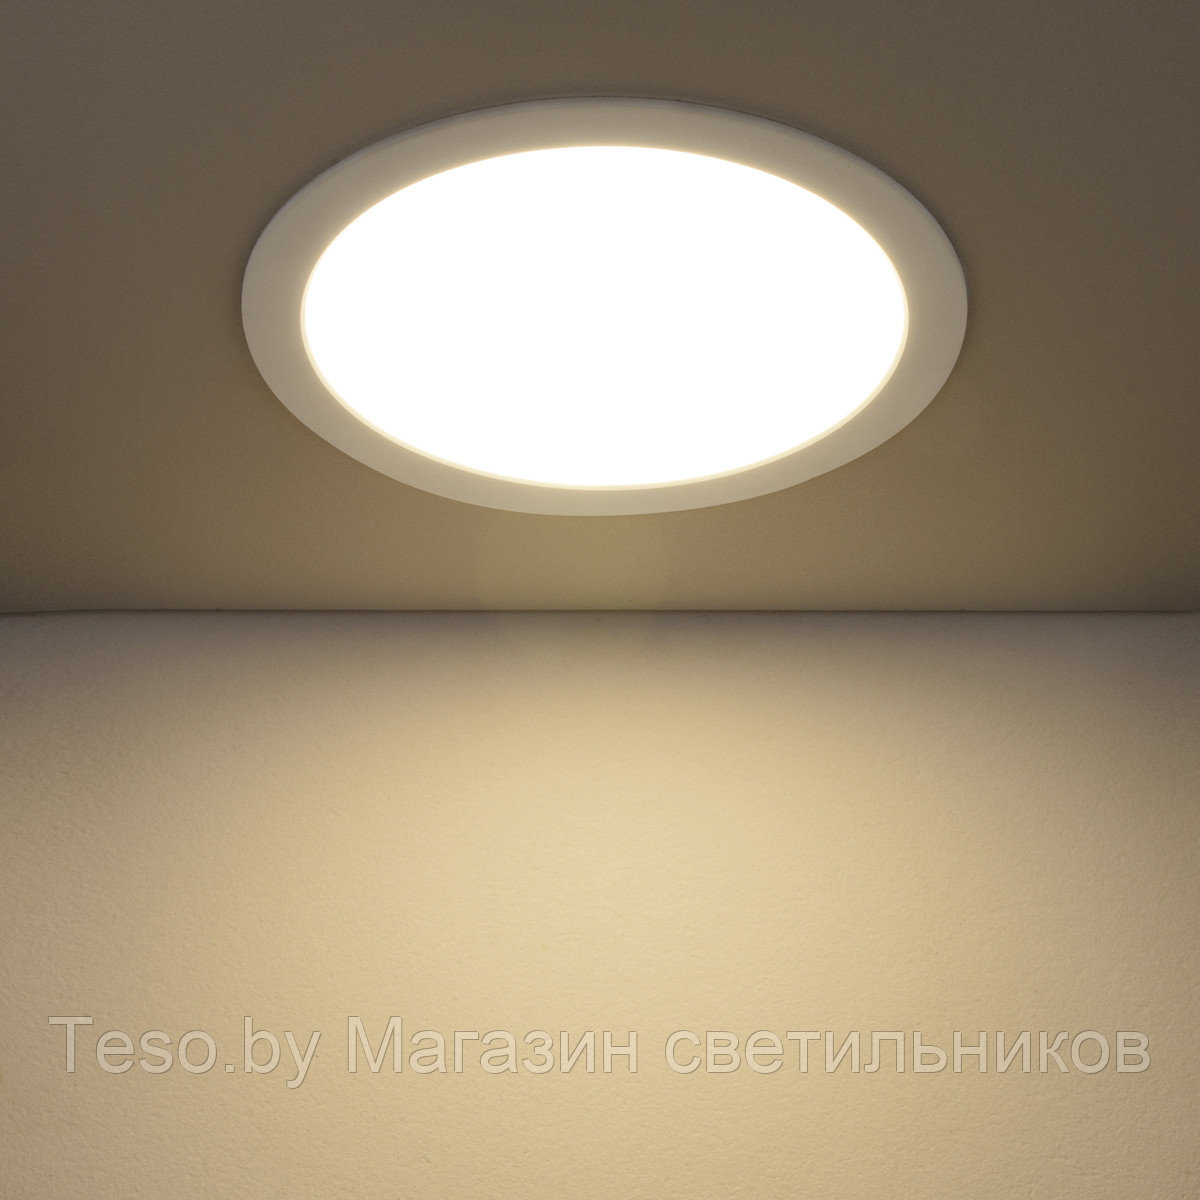 Встраиваемый потолочный светодиодный светильник DLR003 24W 4200K (немецкое качество) , фото 1